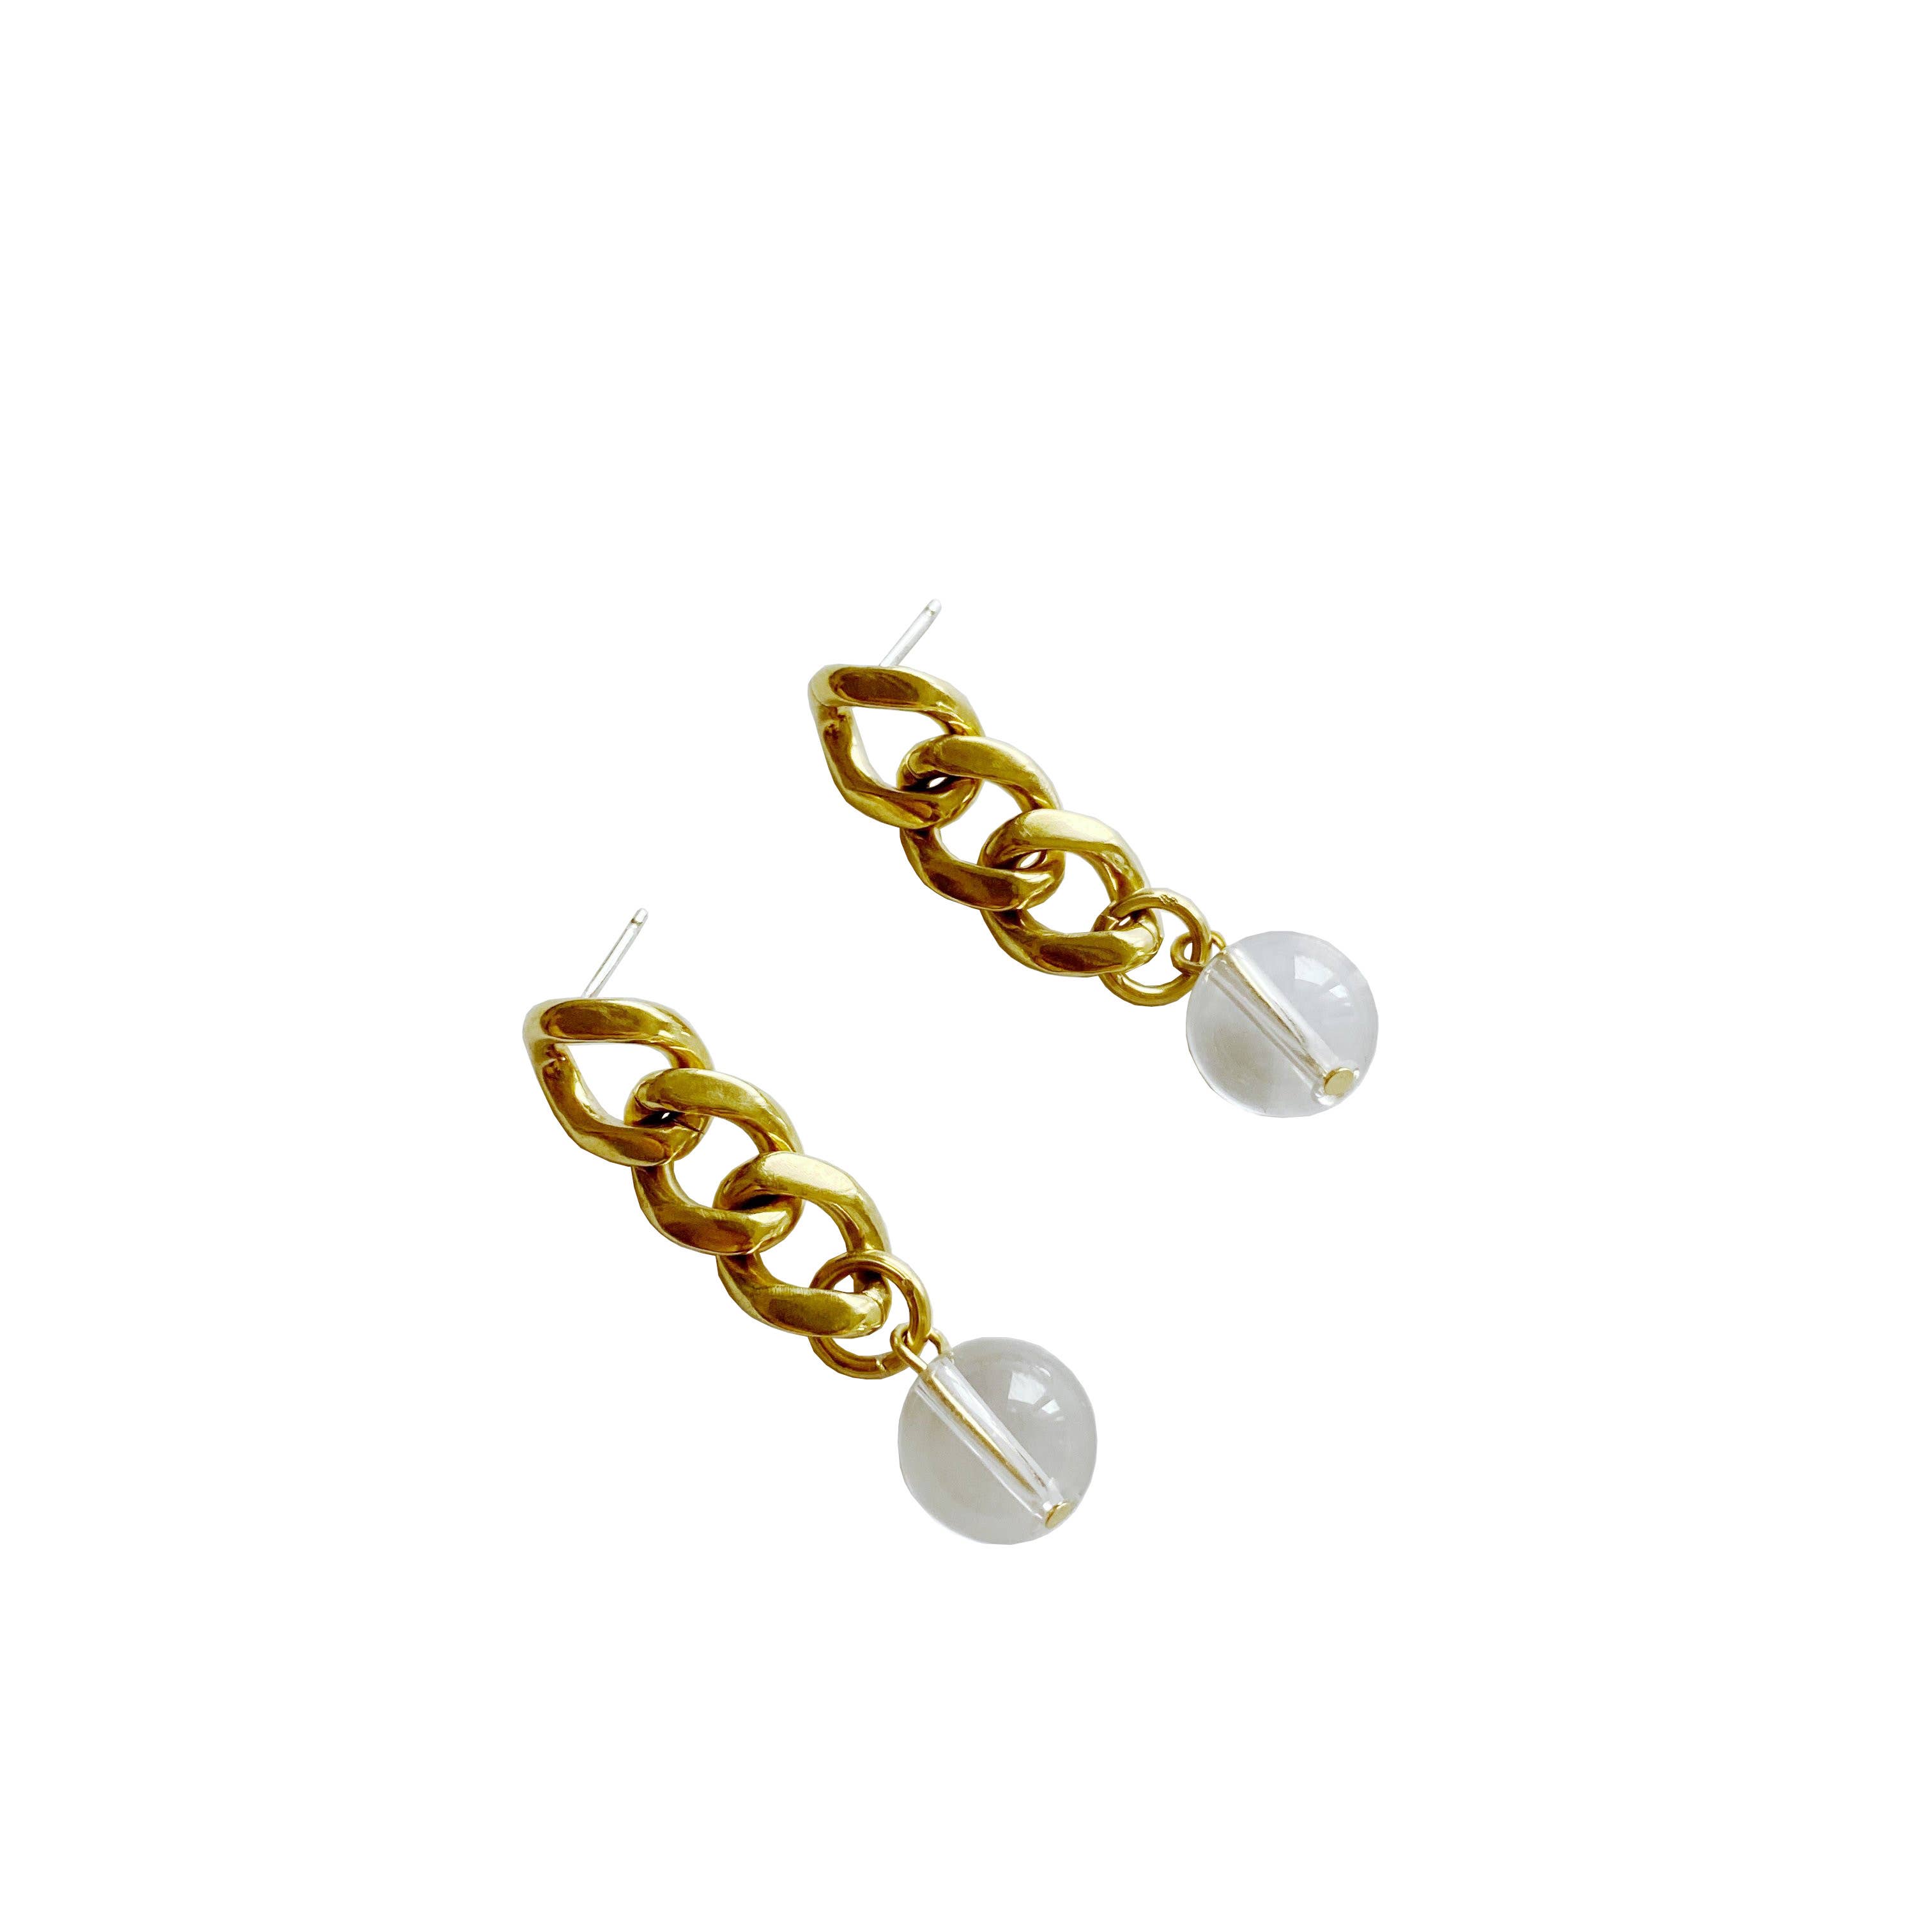 1 Paar Modeschmuck Ohrringe Clips Perlen und brauner Strass 2cm